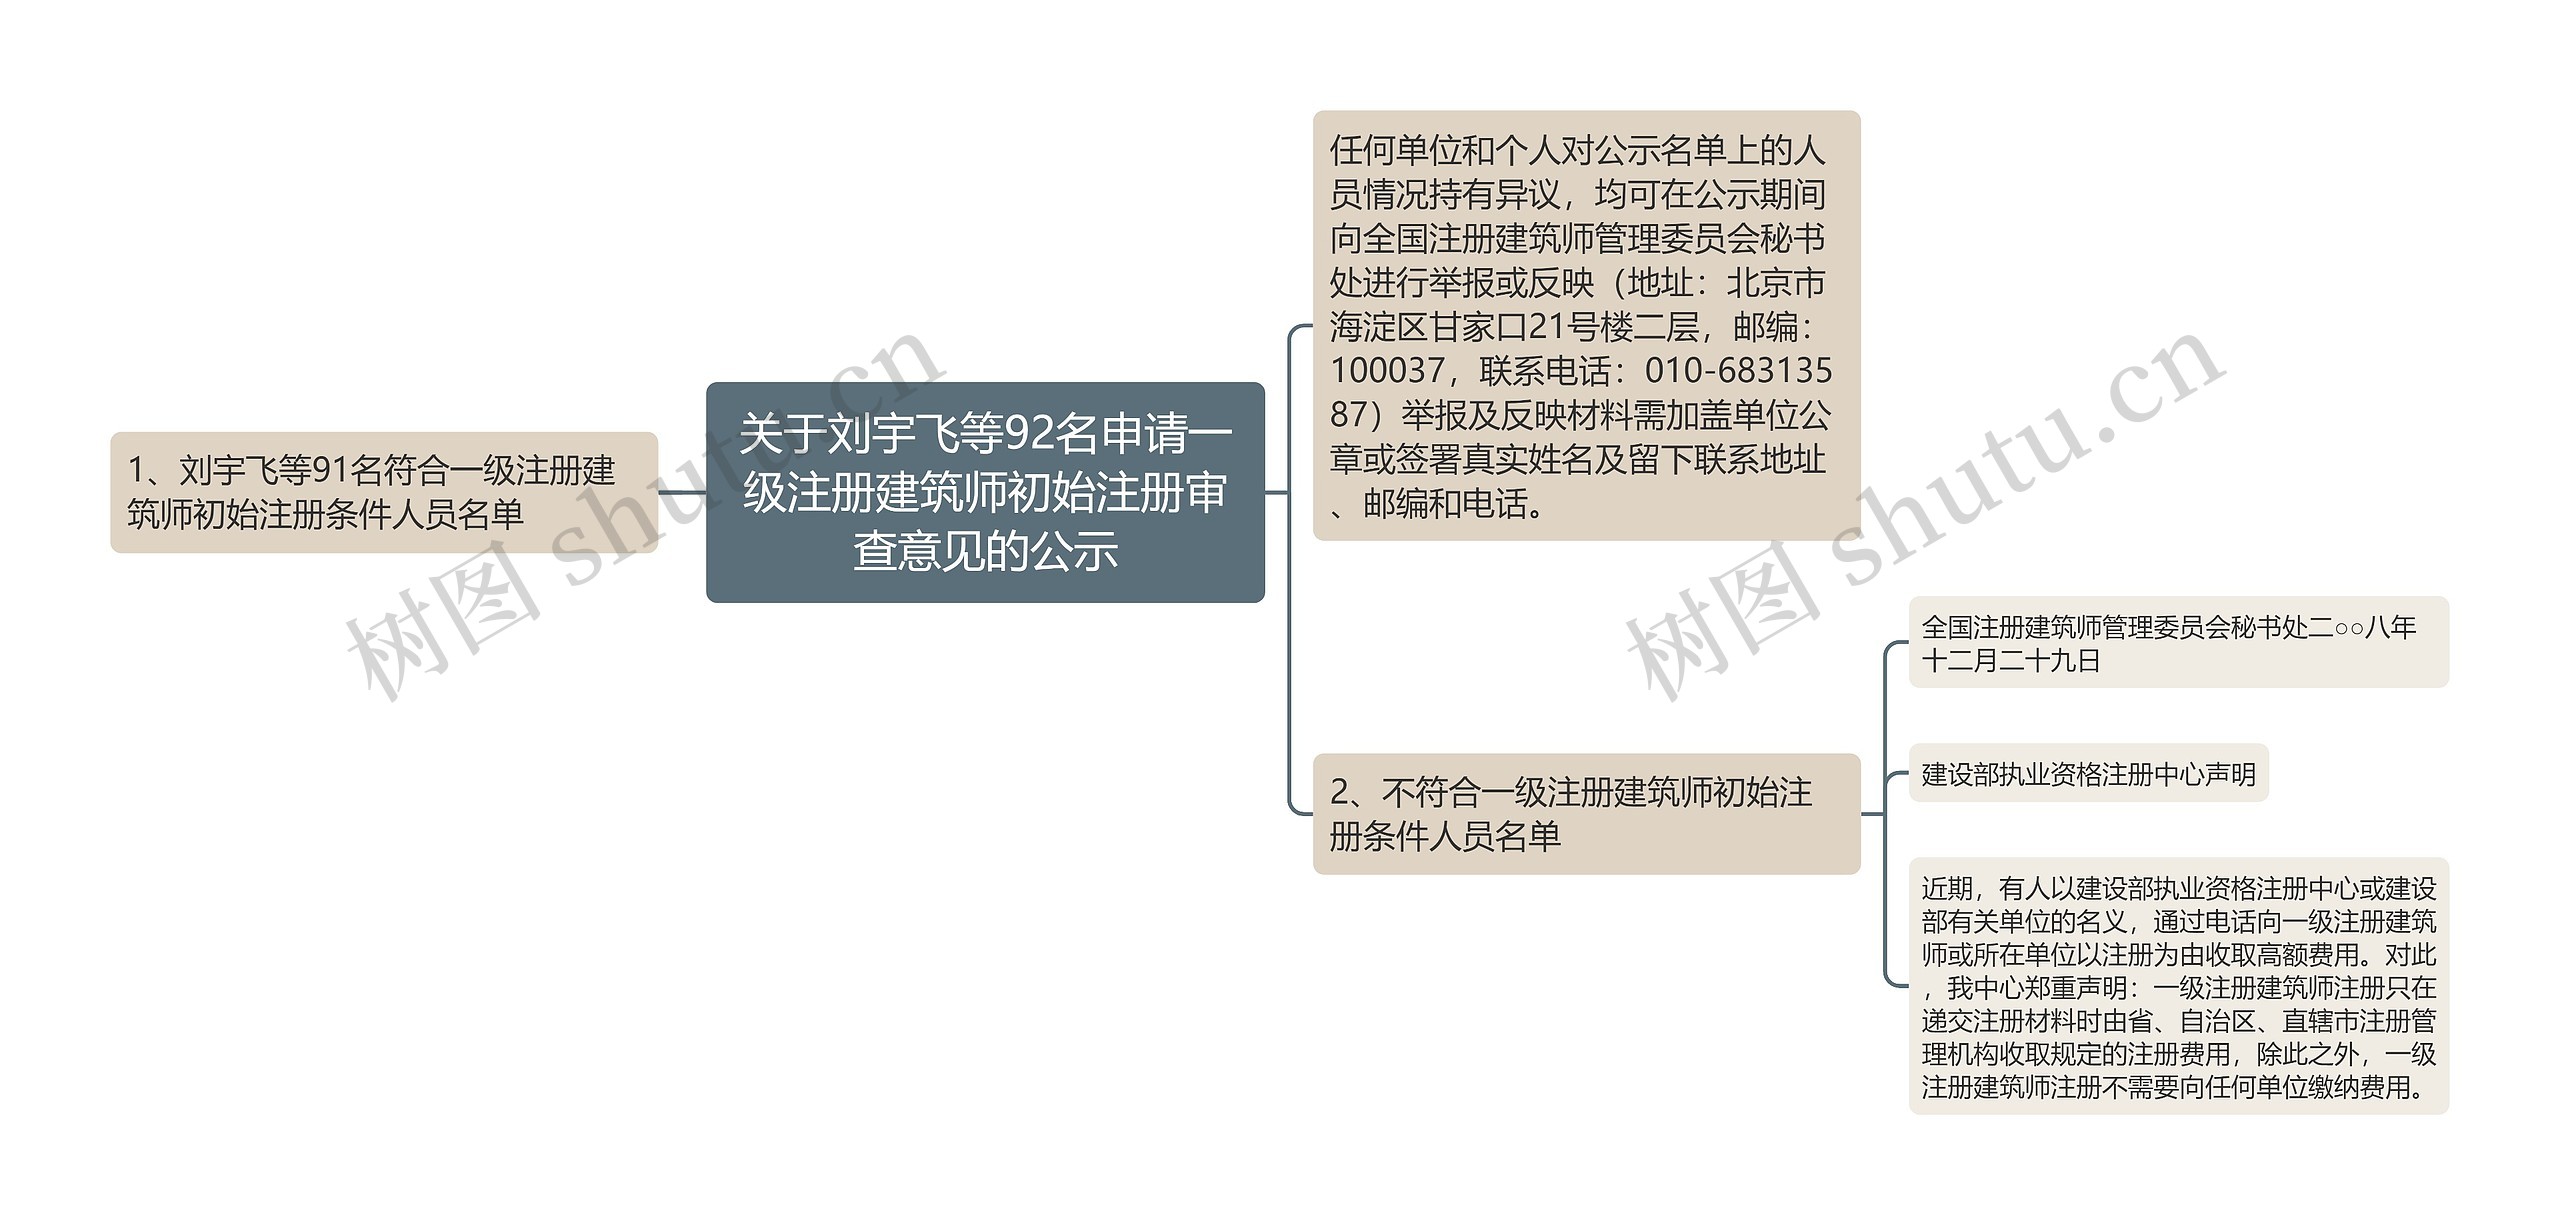 关于刘宇飞等92名申请一级注册建筑师初始注册审查意见的公示思维导图